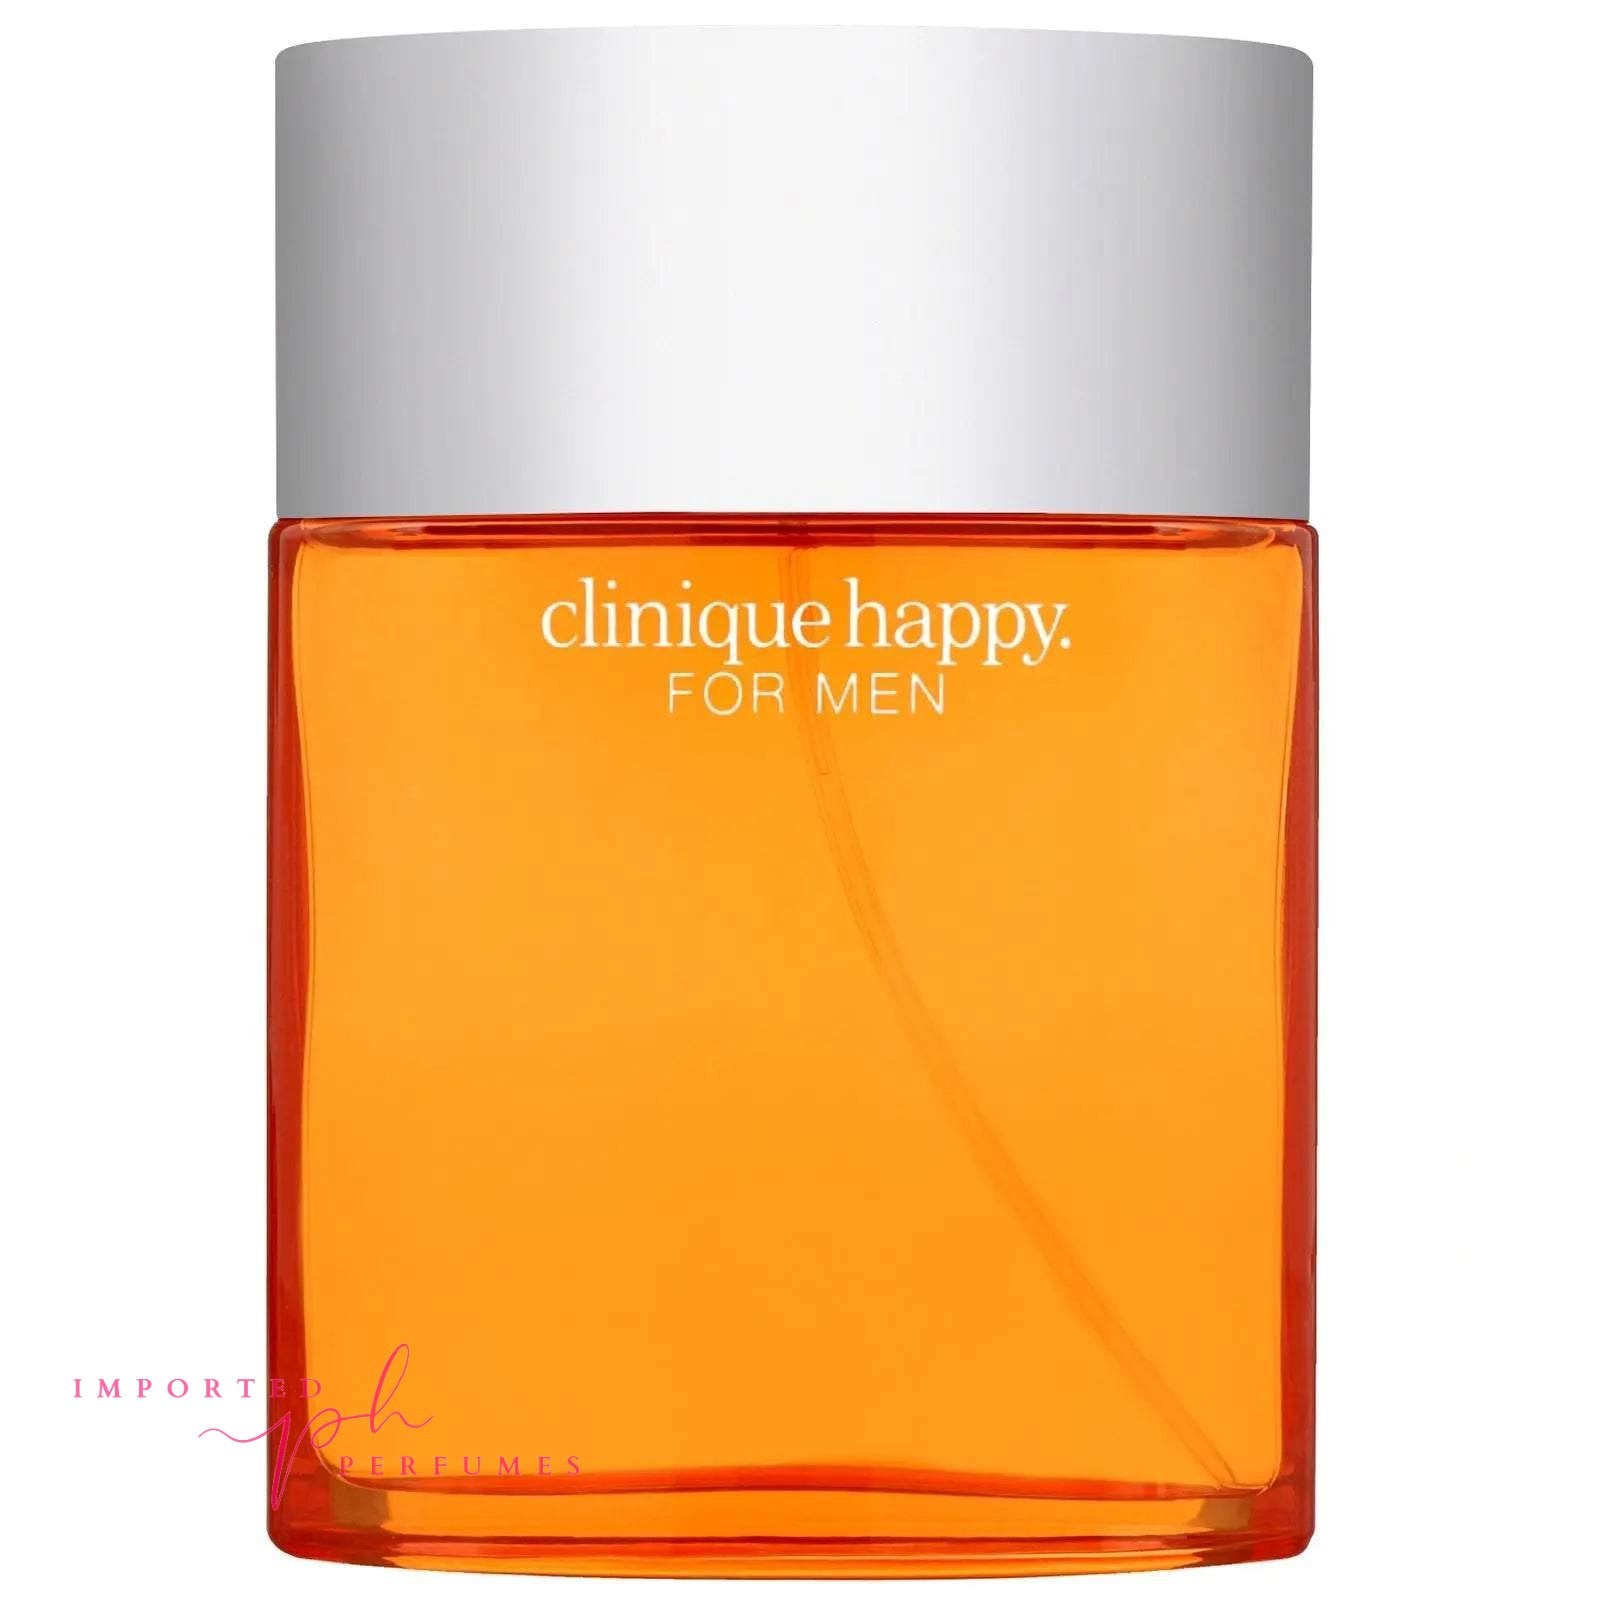 Clinique Happy for Men Eau de Toilette Spray 100ml-Imported Perfumes Co-Clinique,Clinique Happy,men